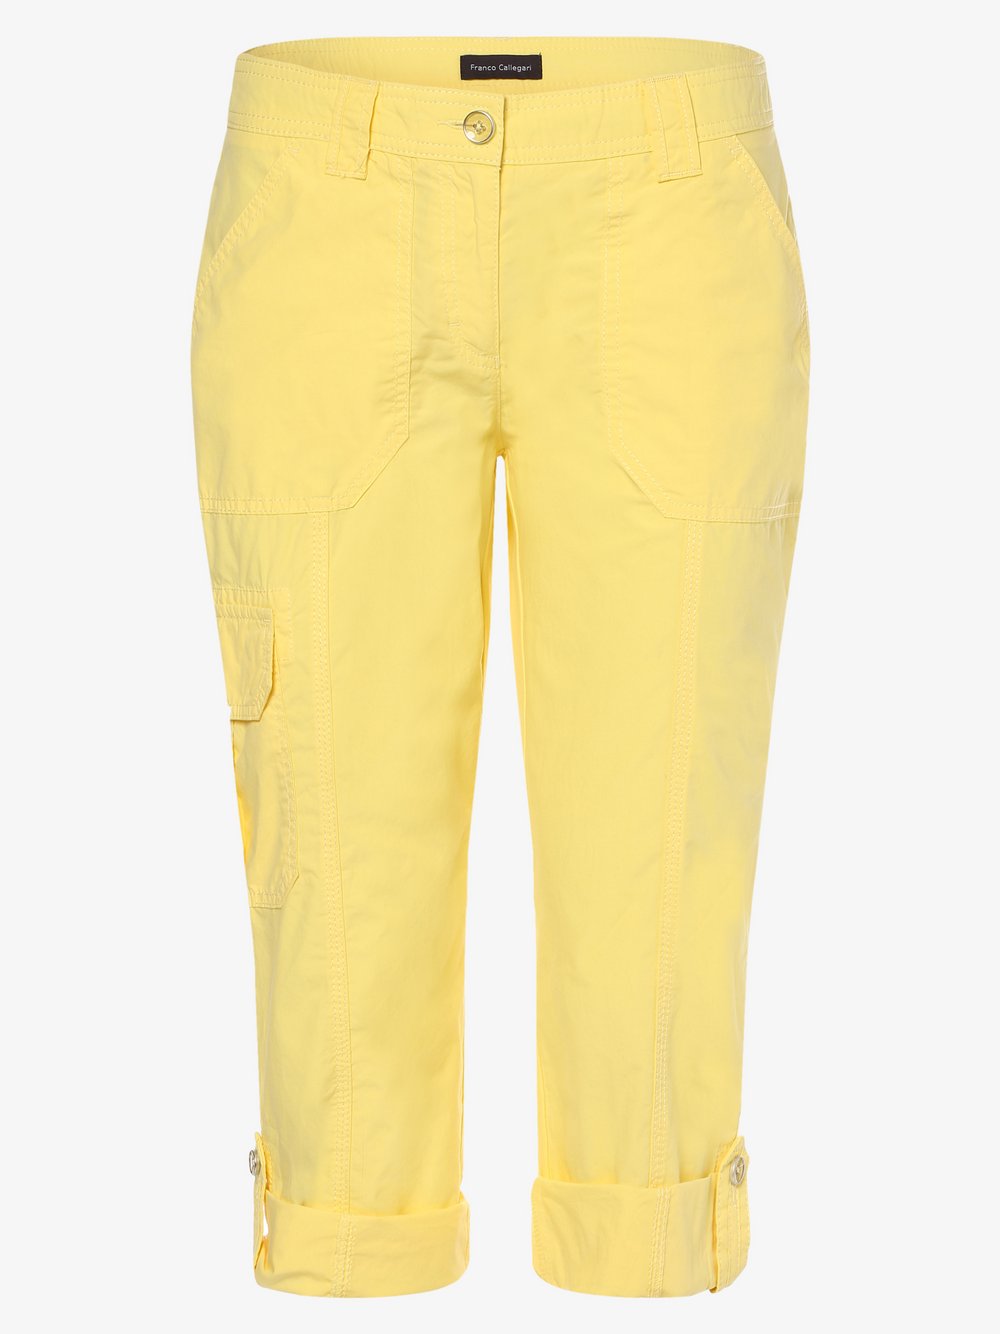 Franco Callegari - Spodnie damskie, żółty